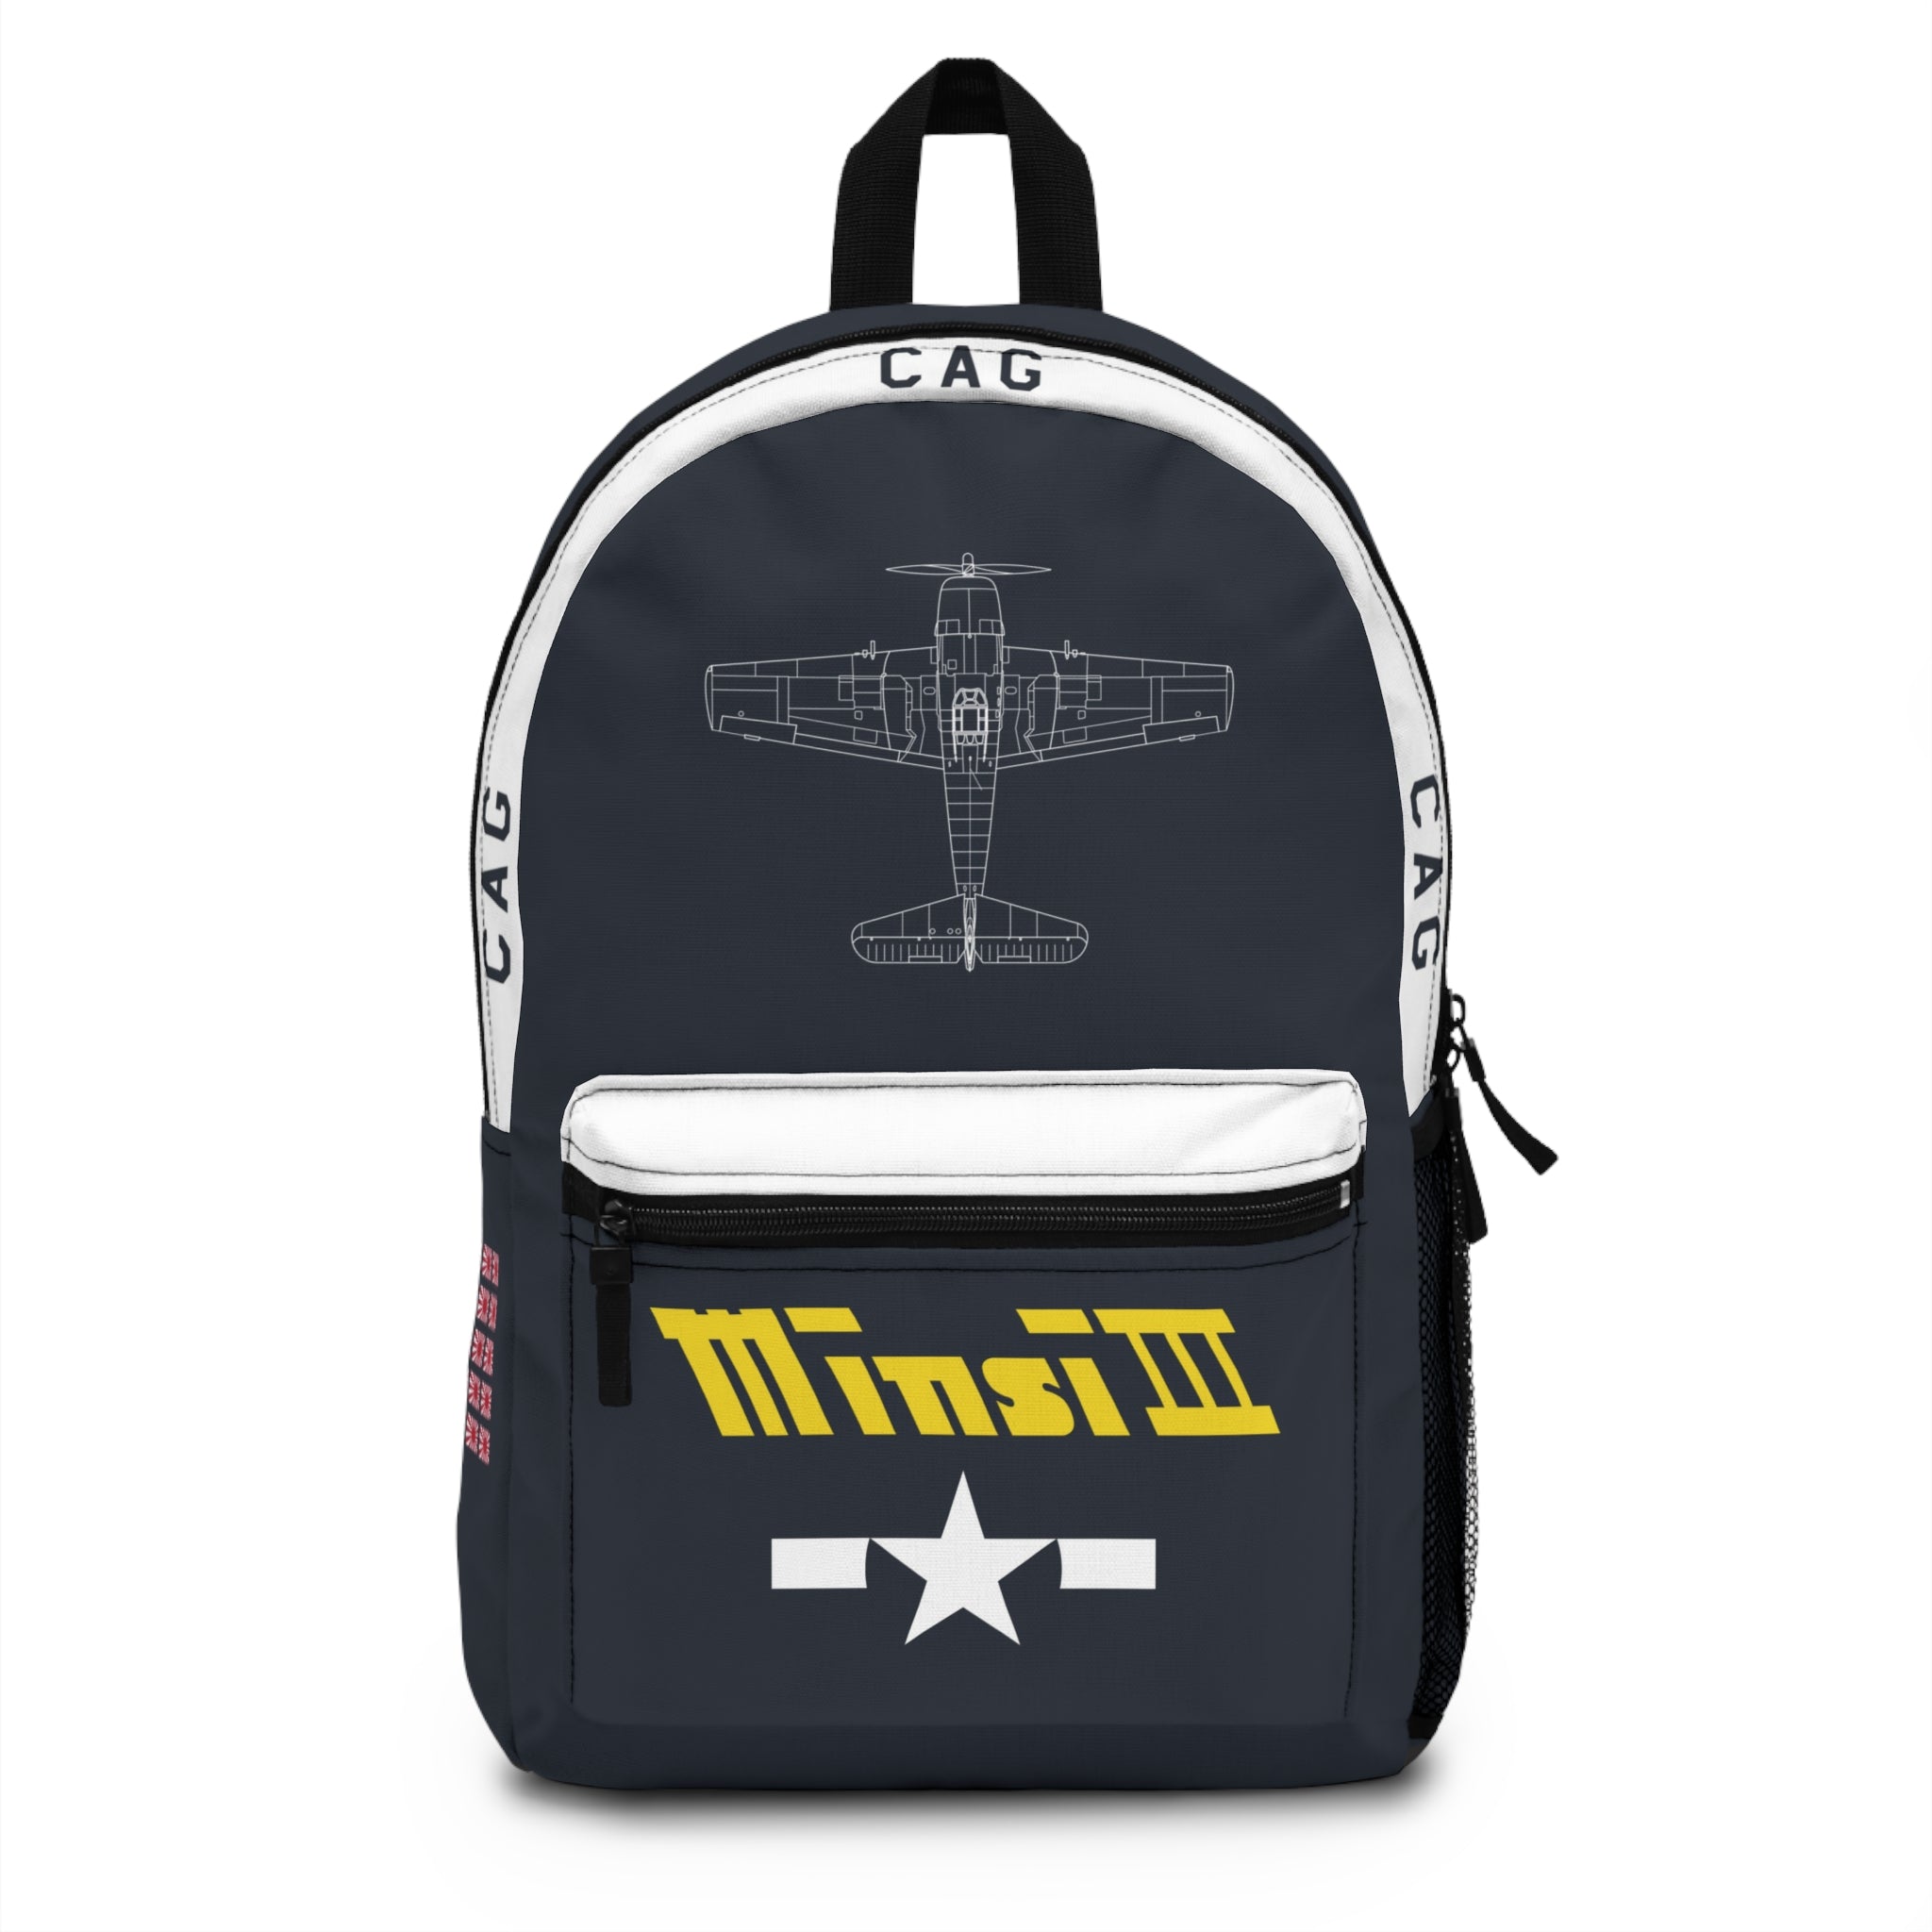 F6F "Minsi III" Backpack - I Love a Hangar